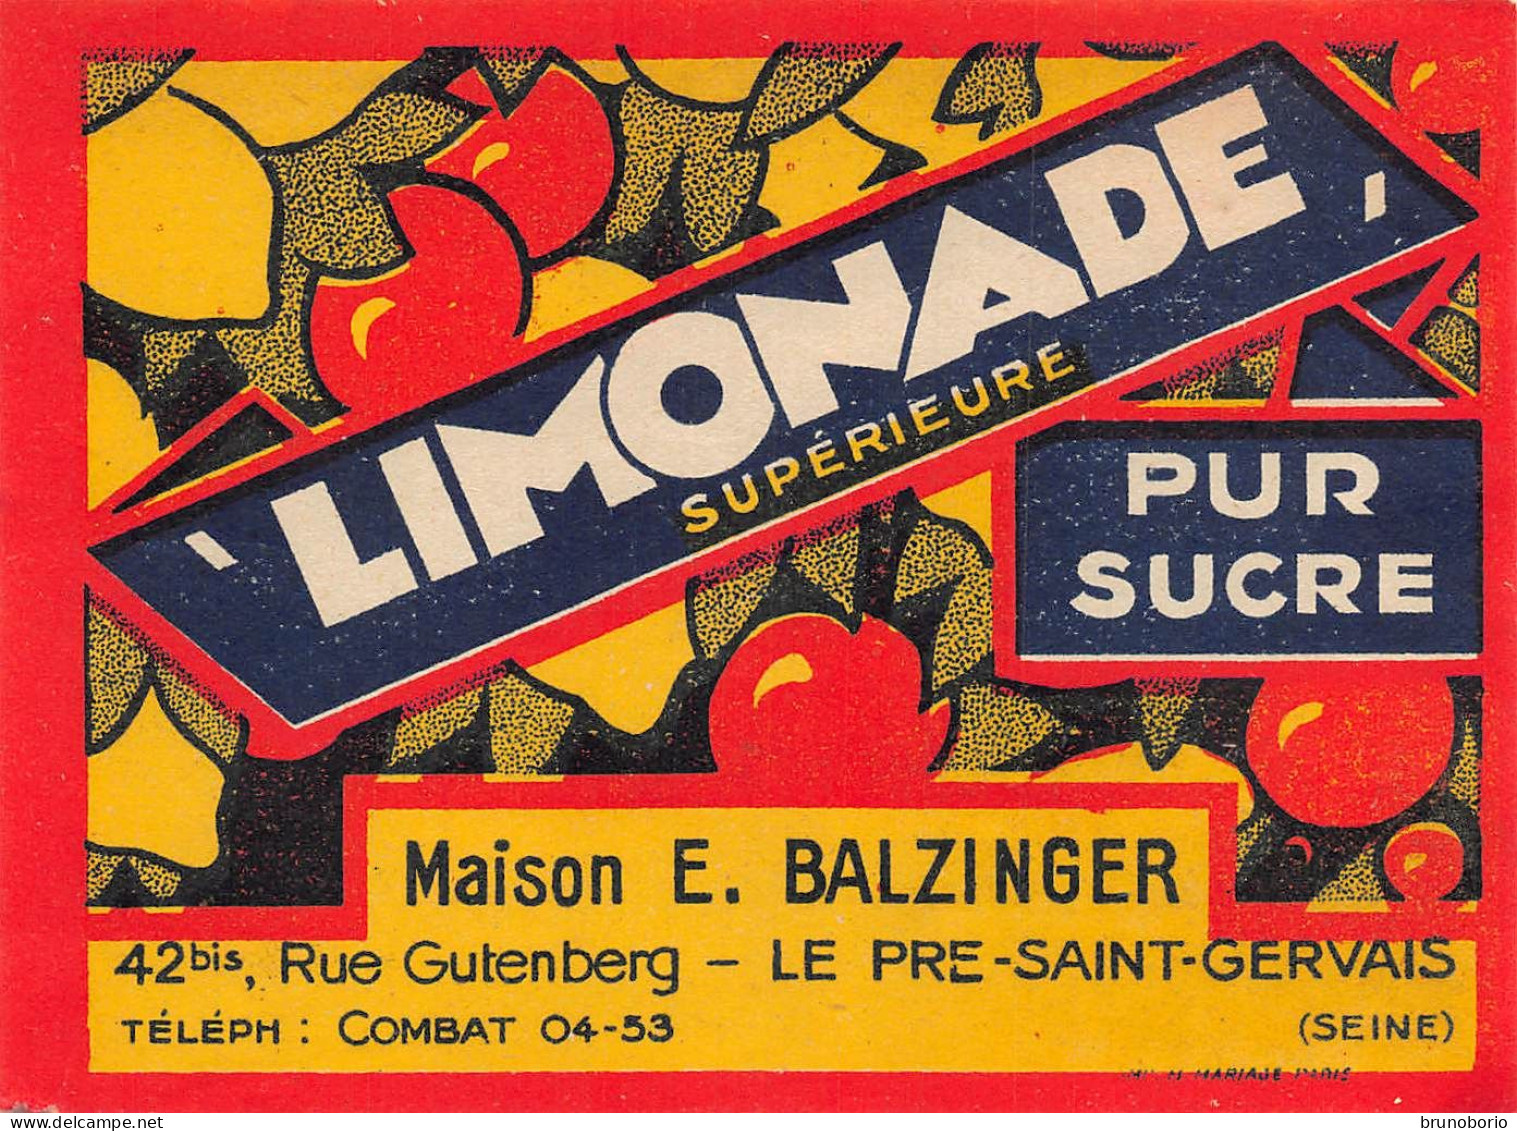 00147  "LIMONADE SUPERIEURE PUR SUCRE - MAISON E. BALZINGER - LE PRE-SAINT.VVERVAIS /SEINE)"  ETICH. ORIG - Frutas Y Legumbres